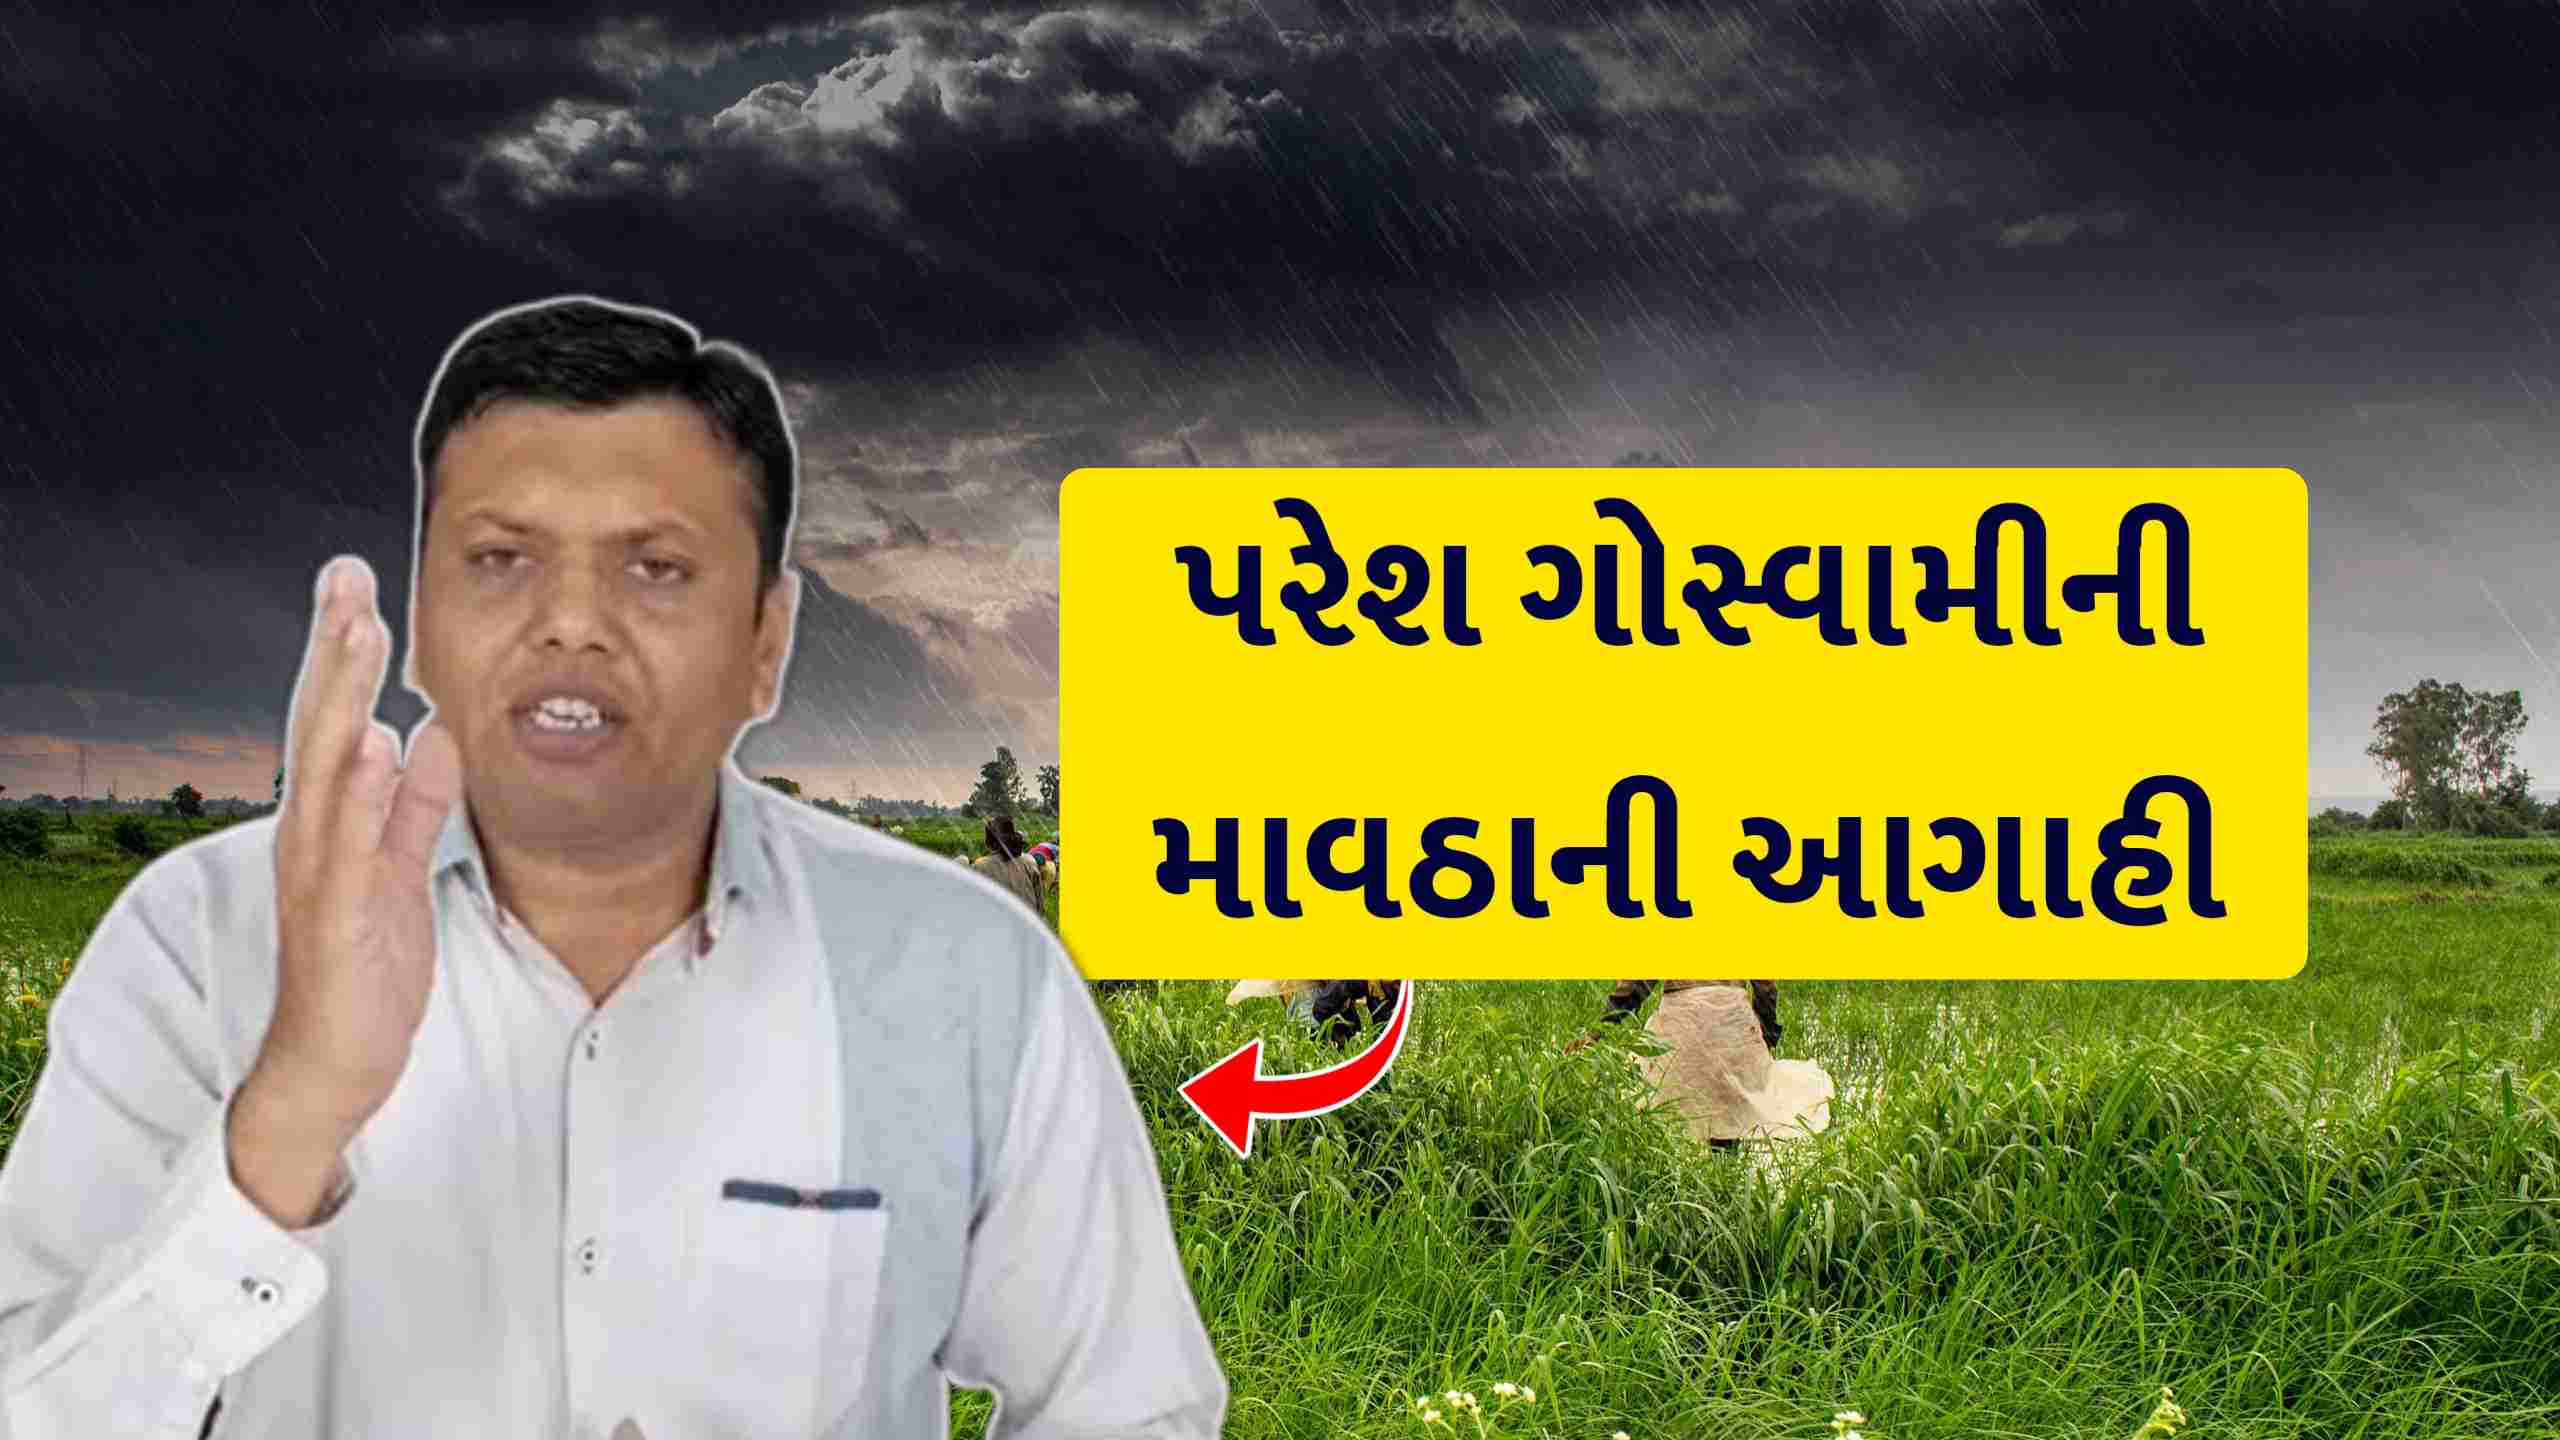 દિવાળી પહેલા ગુજરાતના આ વિસ્તારોમાં છે માવઠાનું અનુમાન, પરેશ ગોસ્વામીની આગાહી